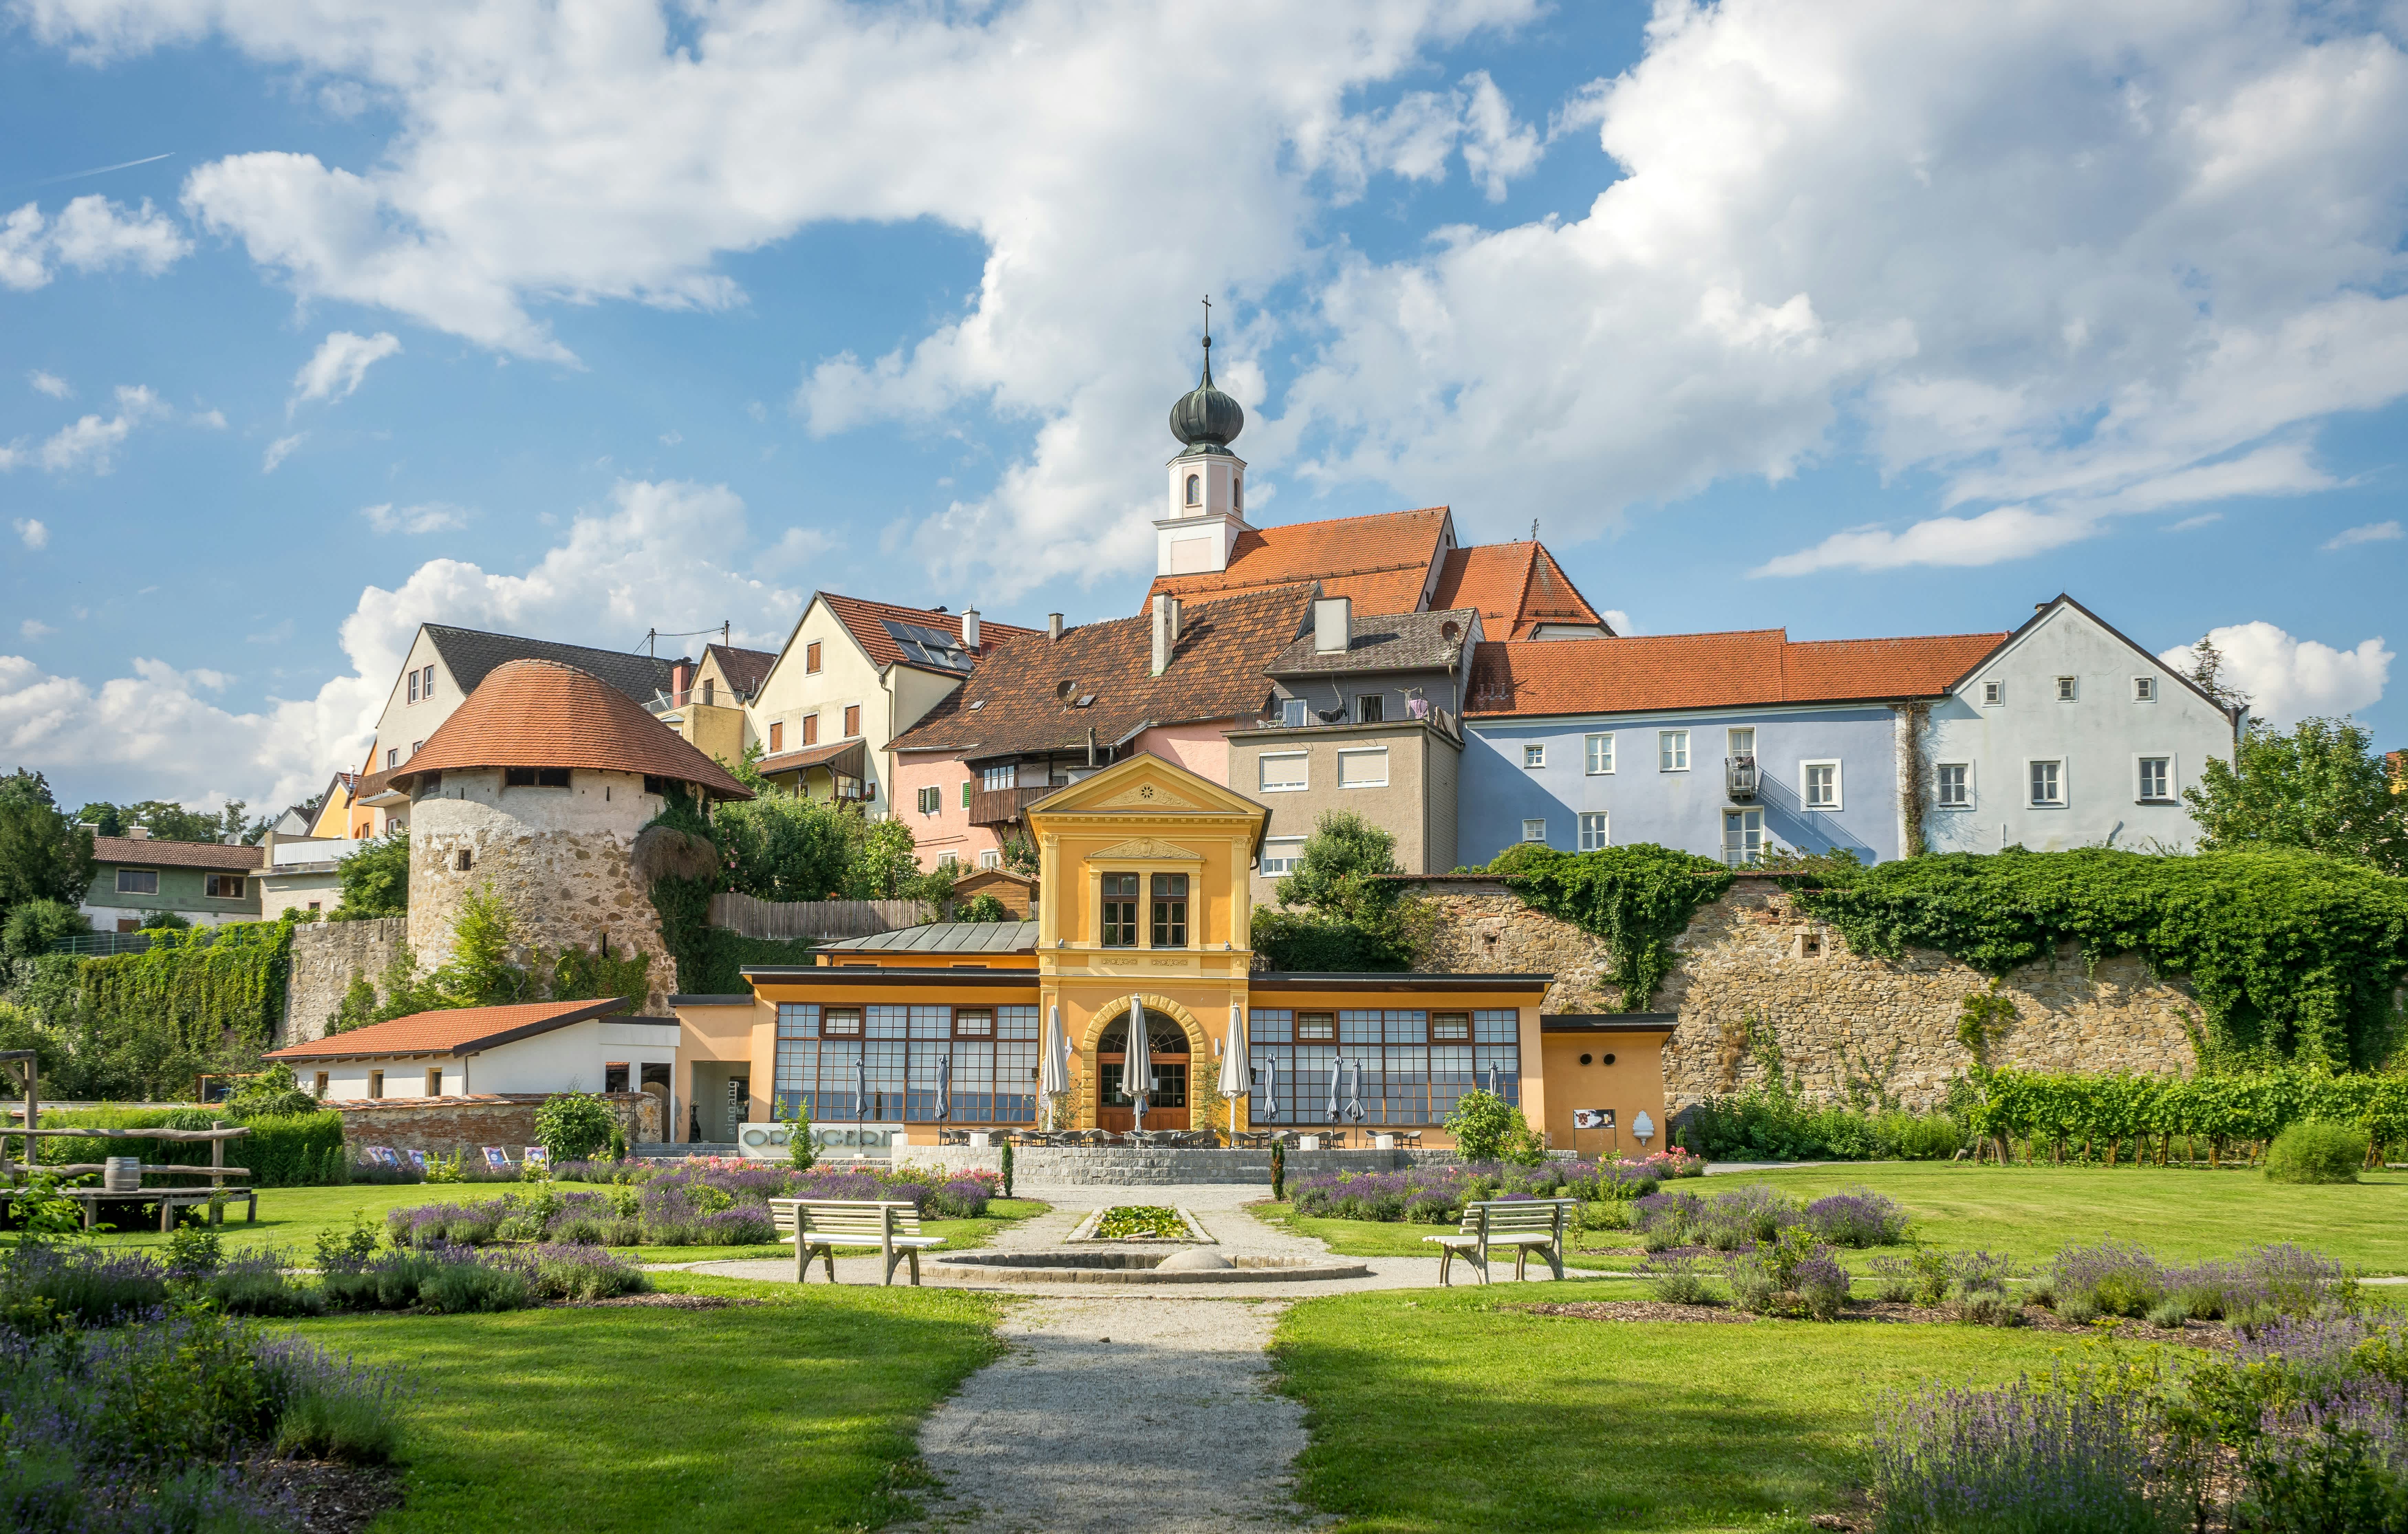 Erleben Sie in Krenglbach, Oberösterreich, die hohe Lebensqualität und regionale Vorzüge. Genießen Sie die Natur und die Annehmlichkeiten des ländlichen Lebens.